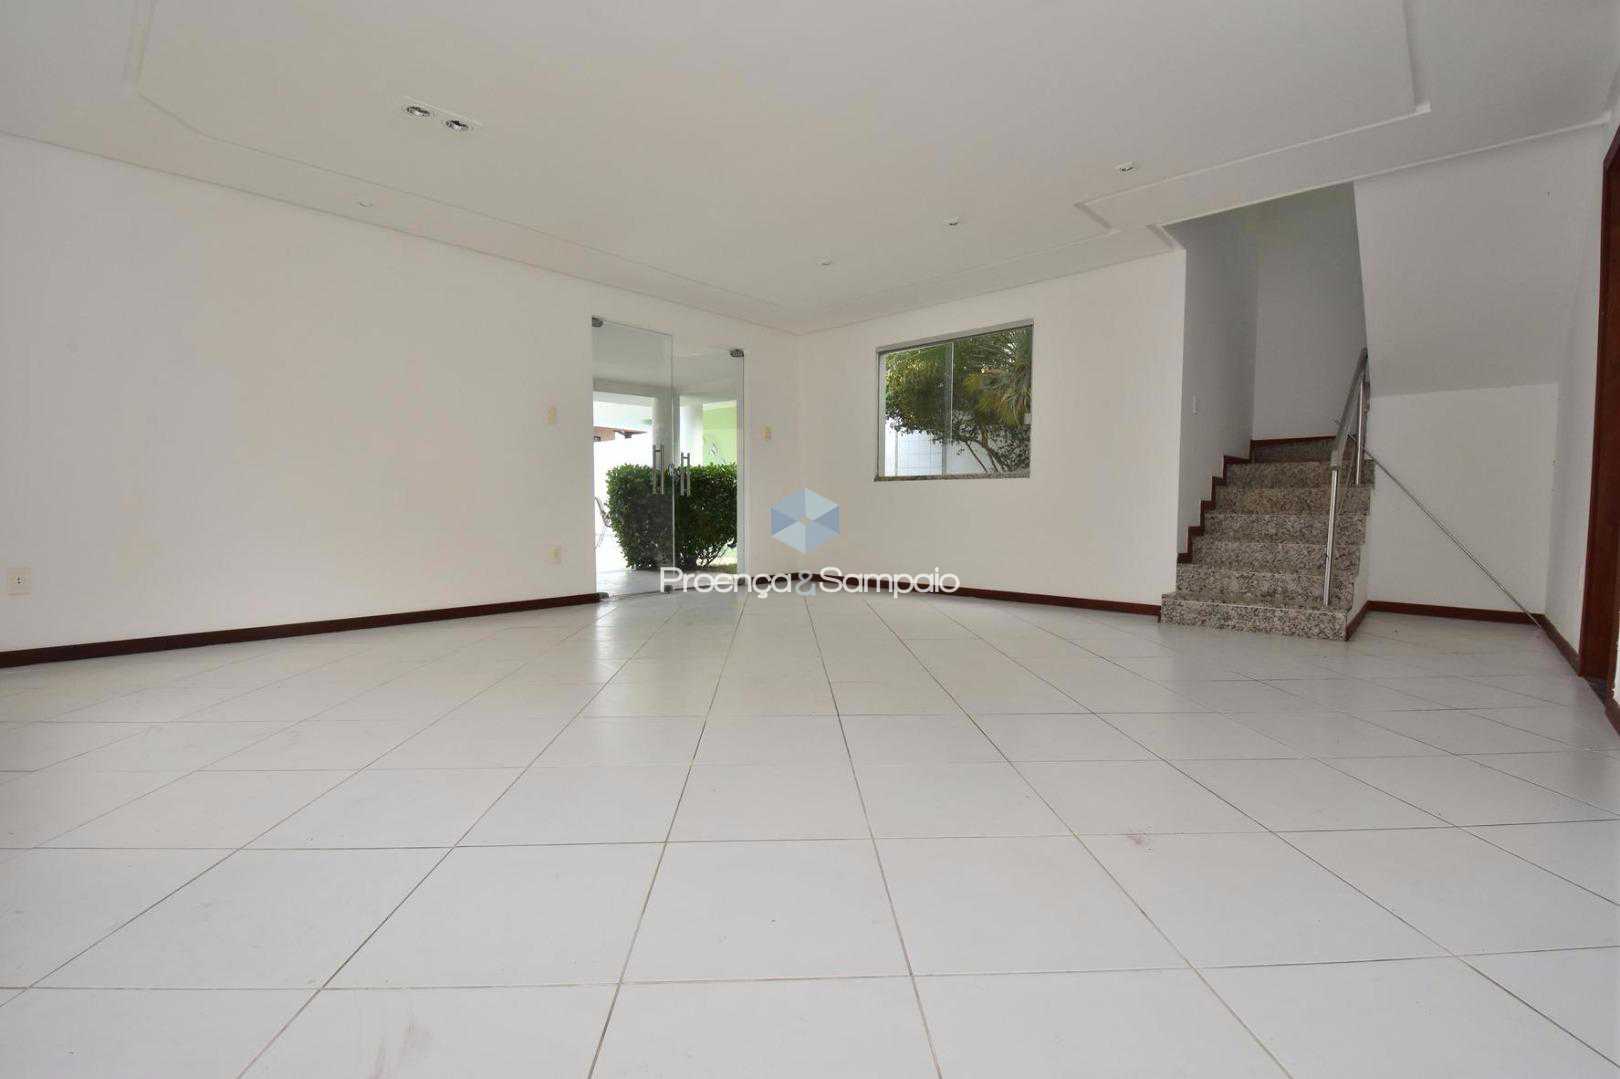 FOTO9 - Casa em Condomínio 4 quartos à venda Lauro de Freitas,BA - R$ 680.000 - PSCN40012 - 11